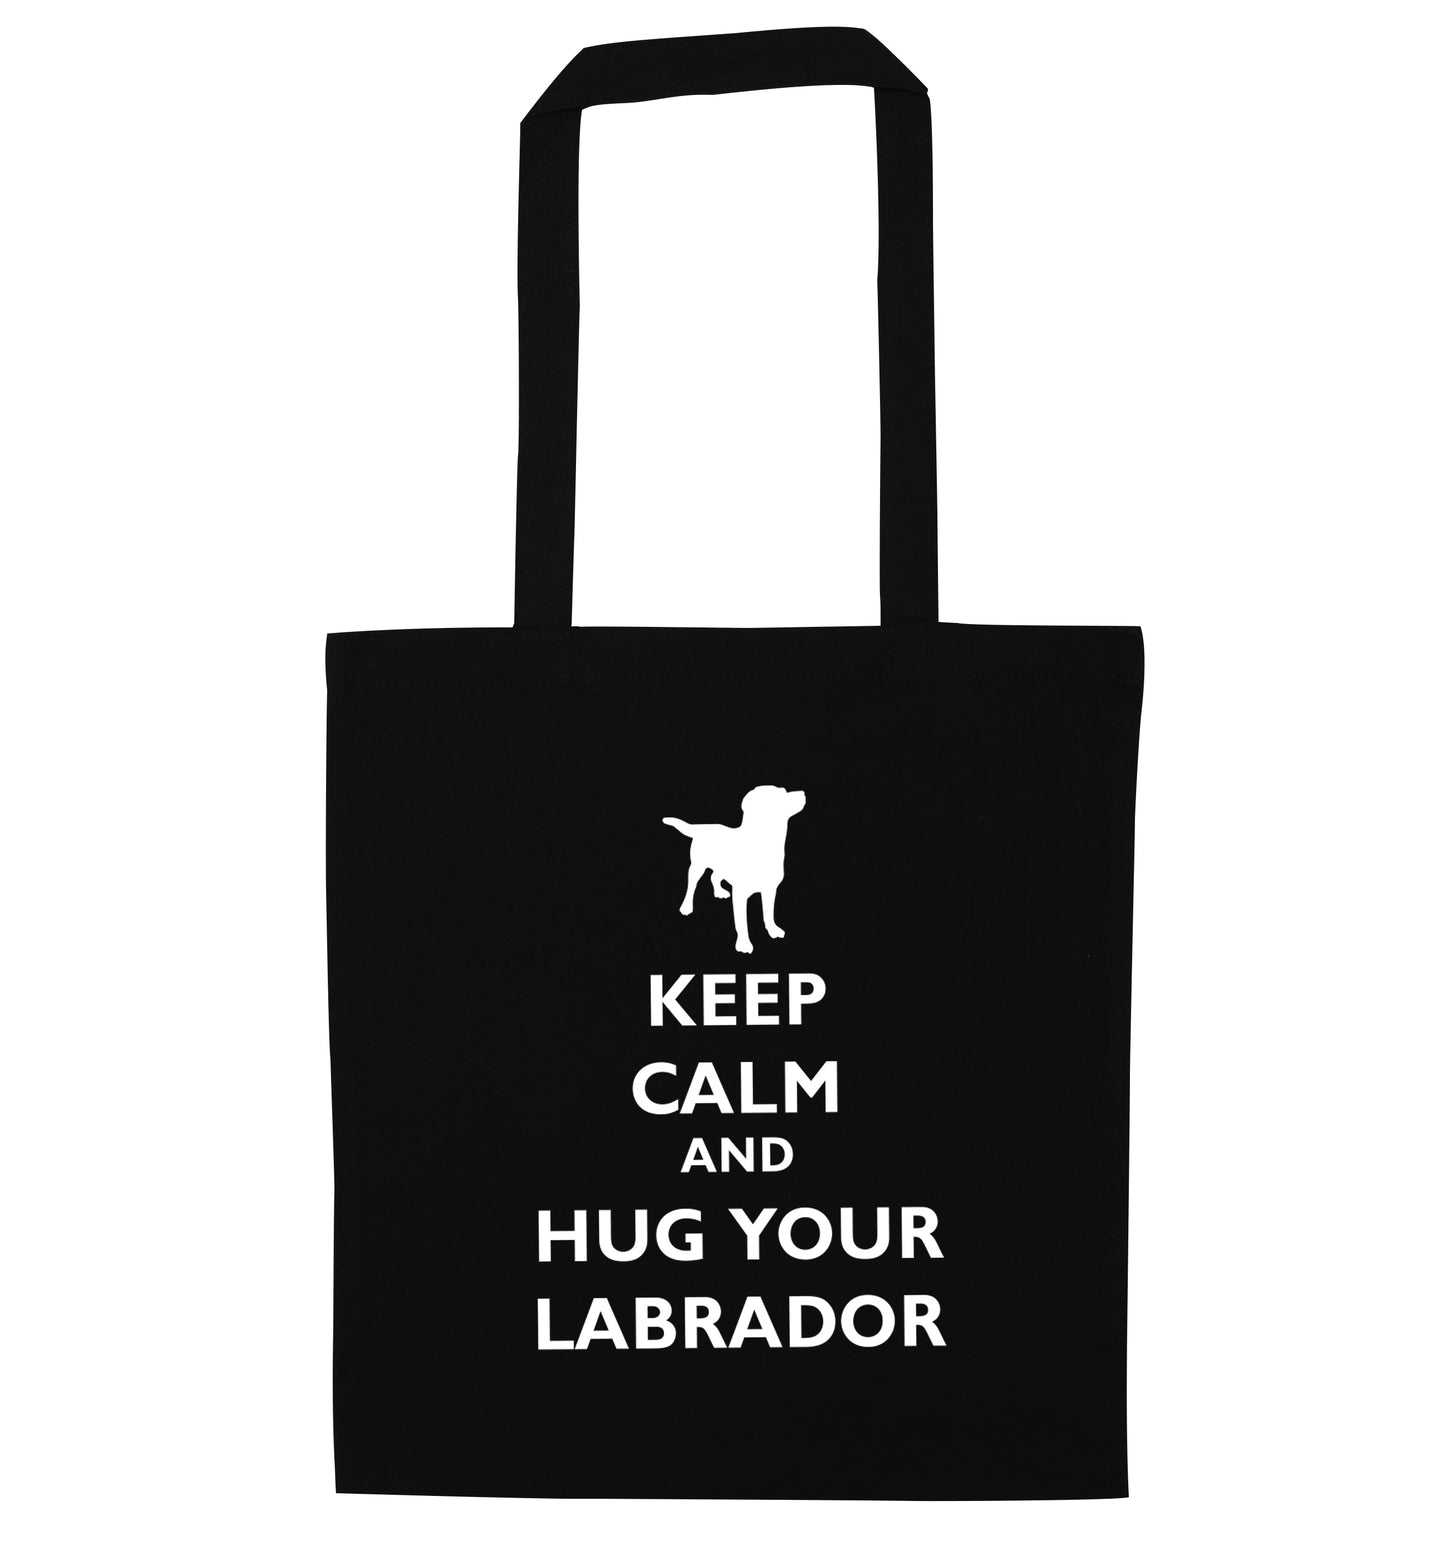 Keep calm and hug your labrador black tote bag